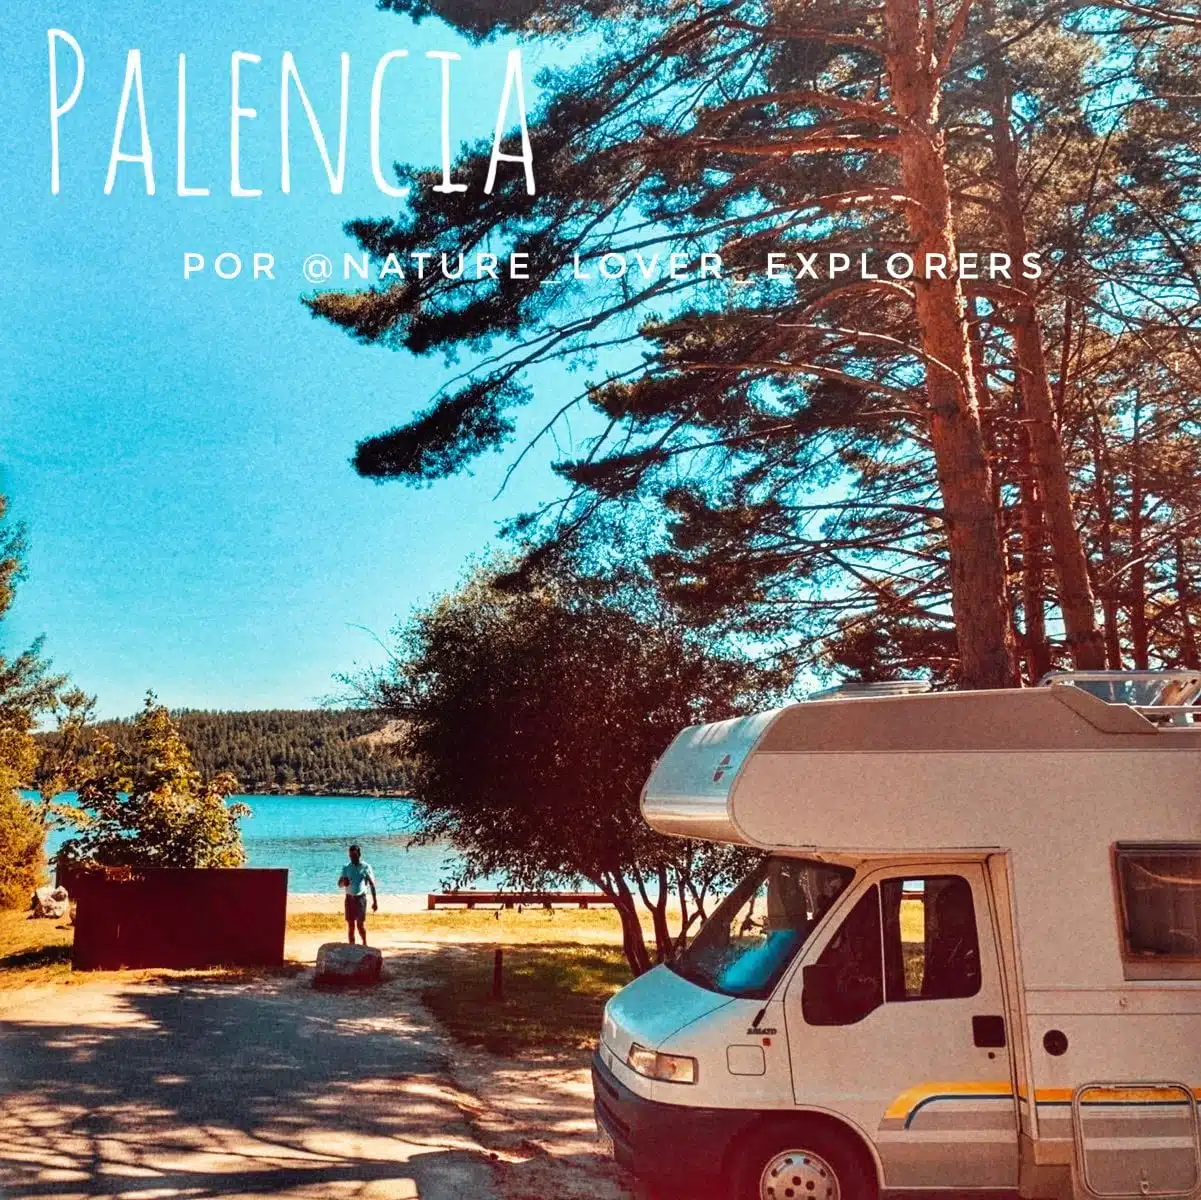 Lire la suite de l'article Palencia en camping-car entre les eaux de @nature_lover_explorers